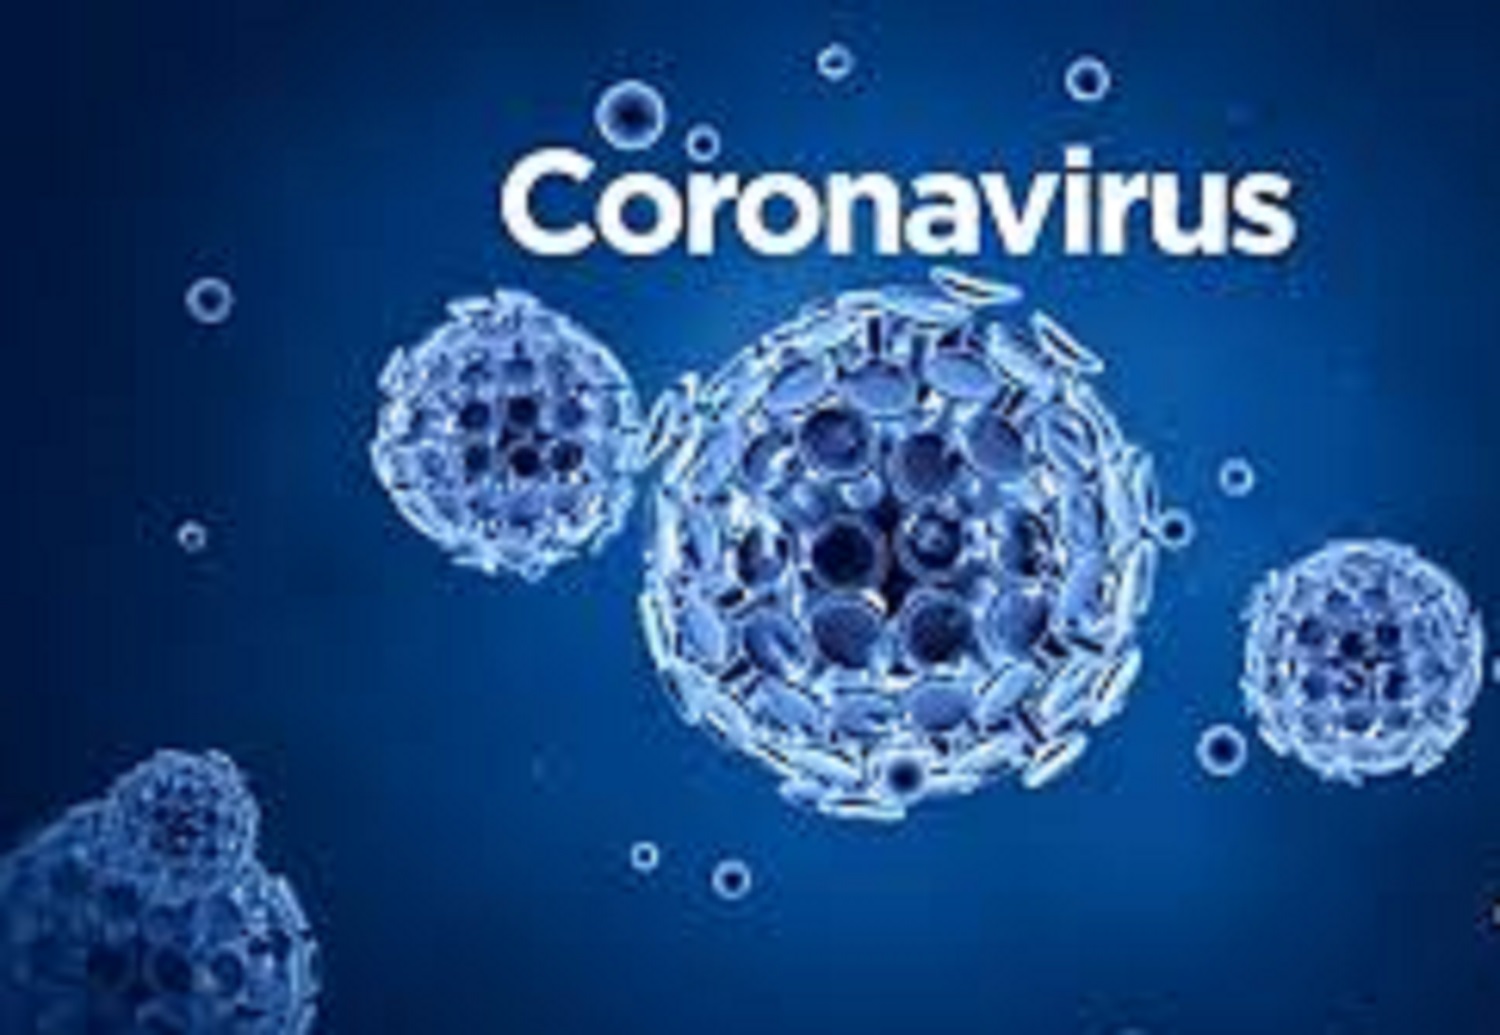 Corona virus: मास्क व सैनियाइजर की कालाबाजारी पर ममता सरकार की नजर